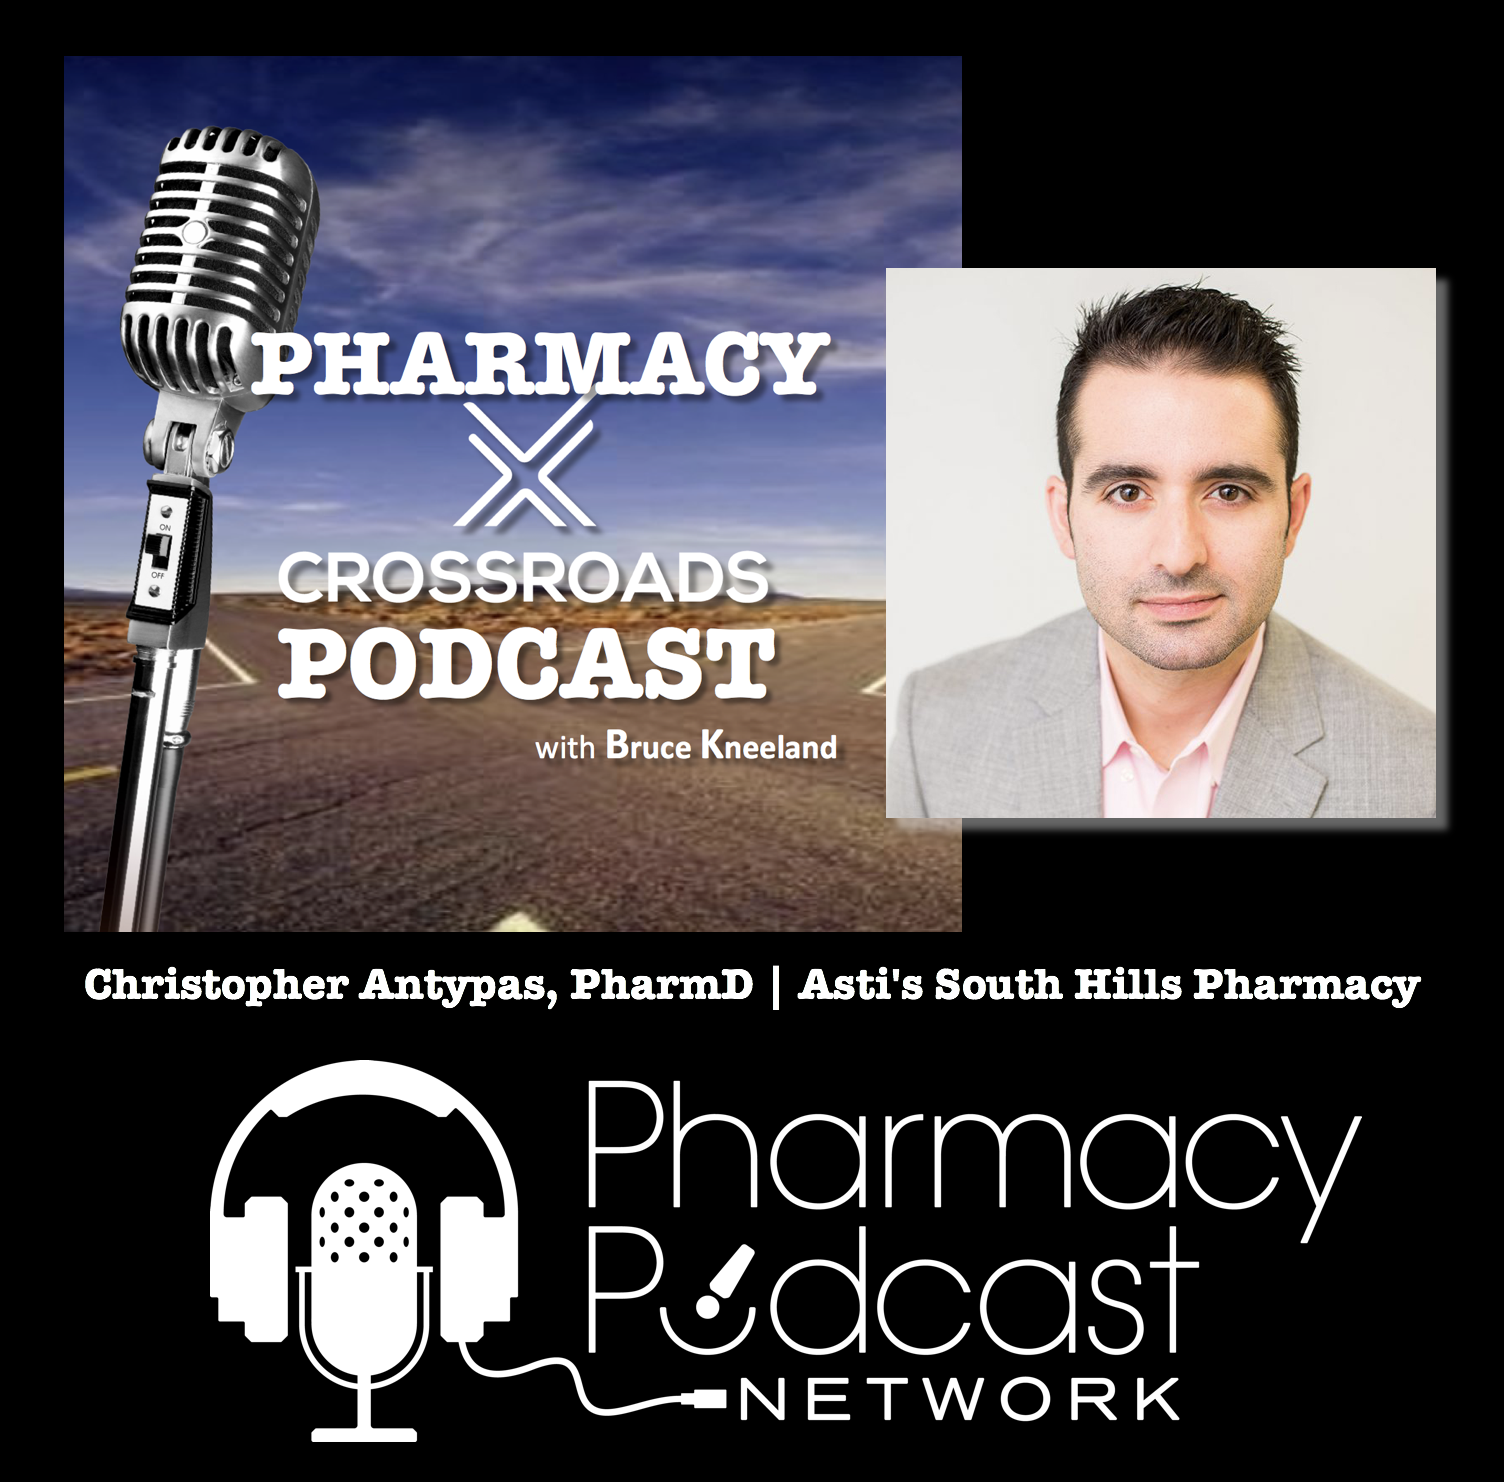 The Next-Gen Pharmacy owner looks like Dr. Chris Antypas, PharmD | Pharmacy Crossroads